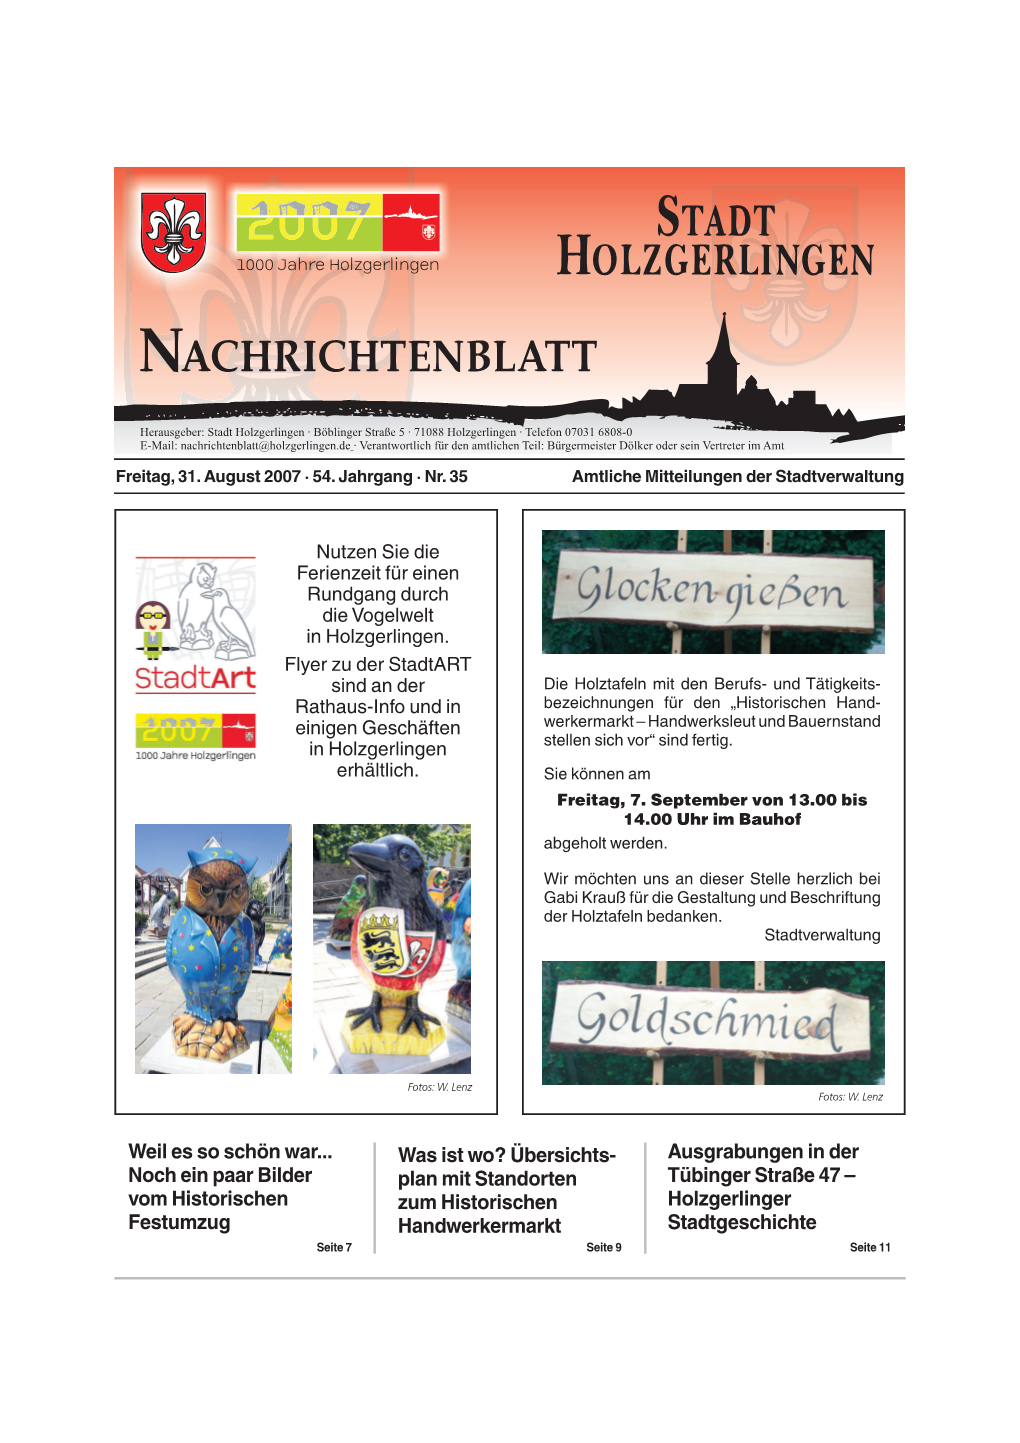 Ausgrabungen in Der Tübinger Straße 47 – Holzgerlinger Stadtgeschichte Was Ist Wo? Übersichts- Plan Mit Standorten Zum Hist